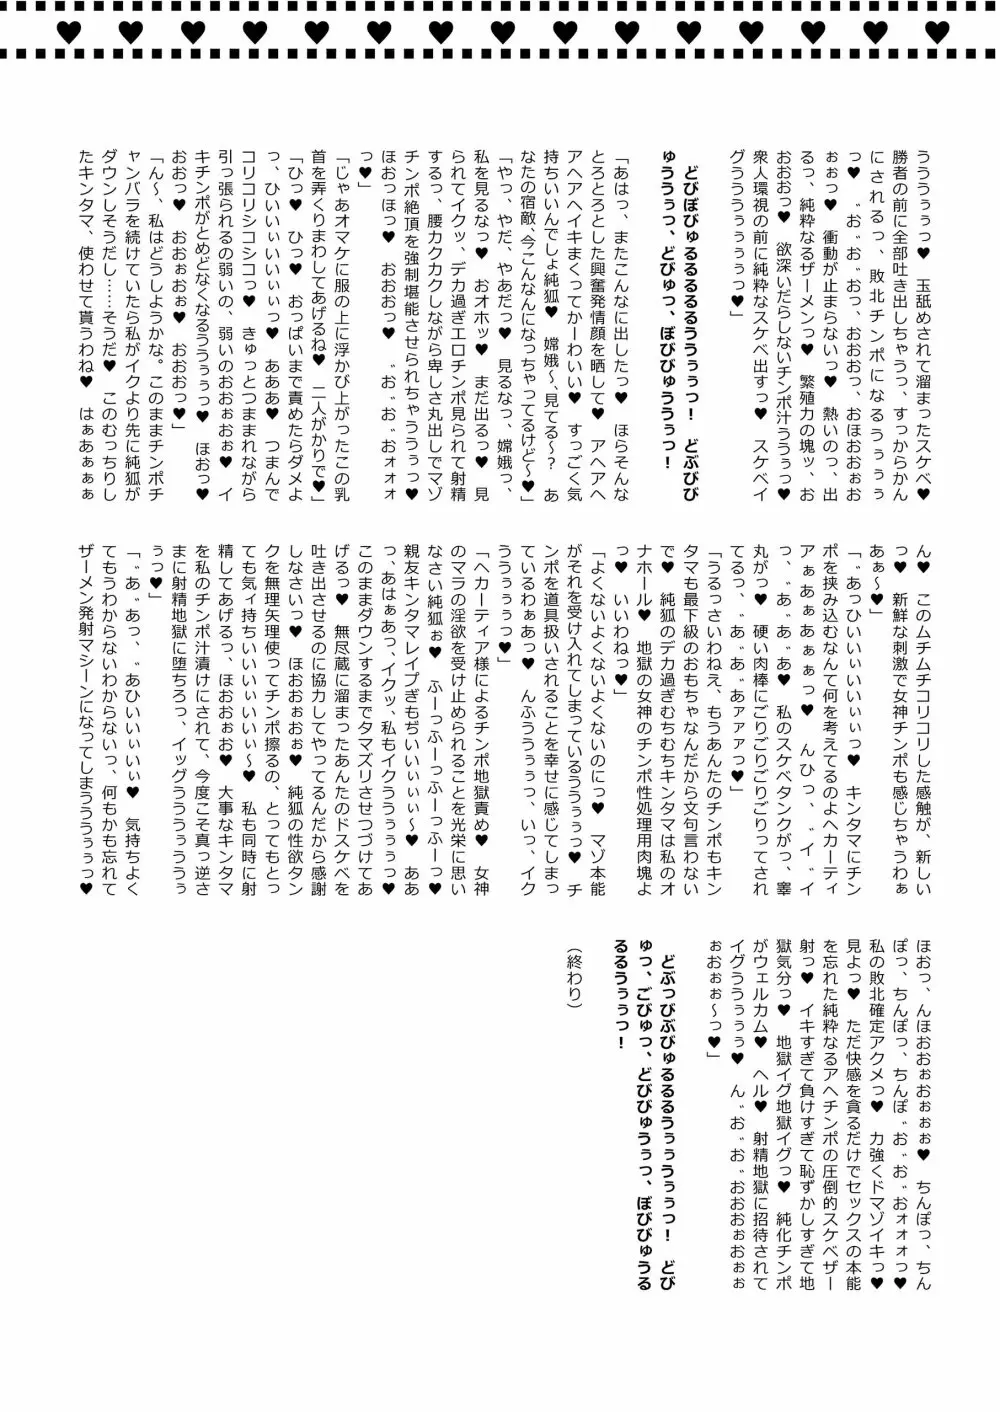 幻想郷フタナリチンポレスリング合同誌2 GFCW Extreme Joker 80ページ